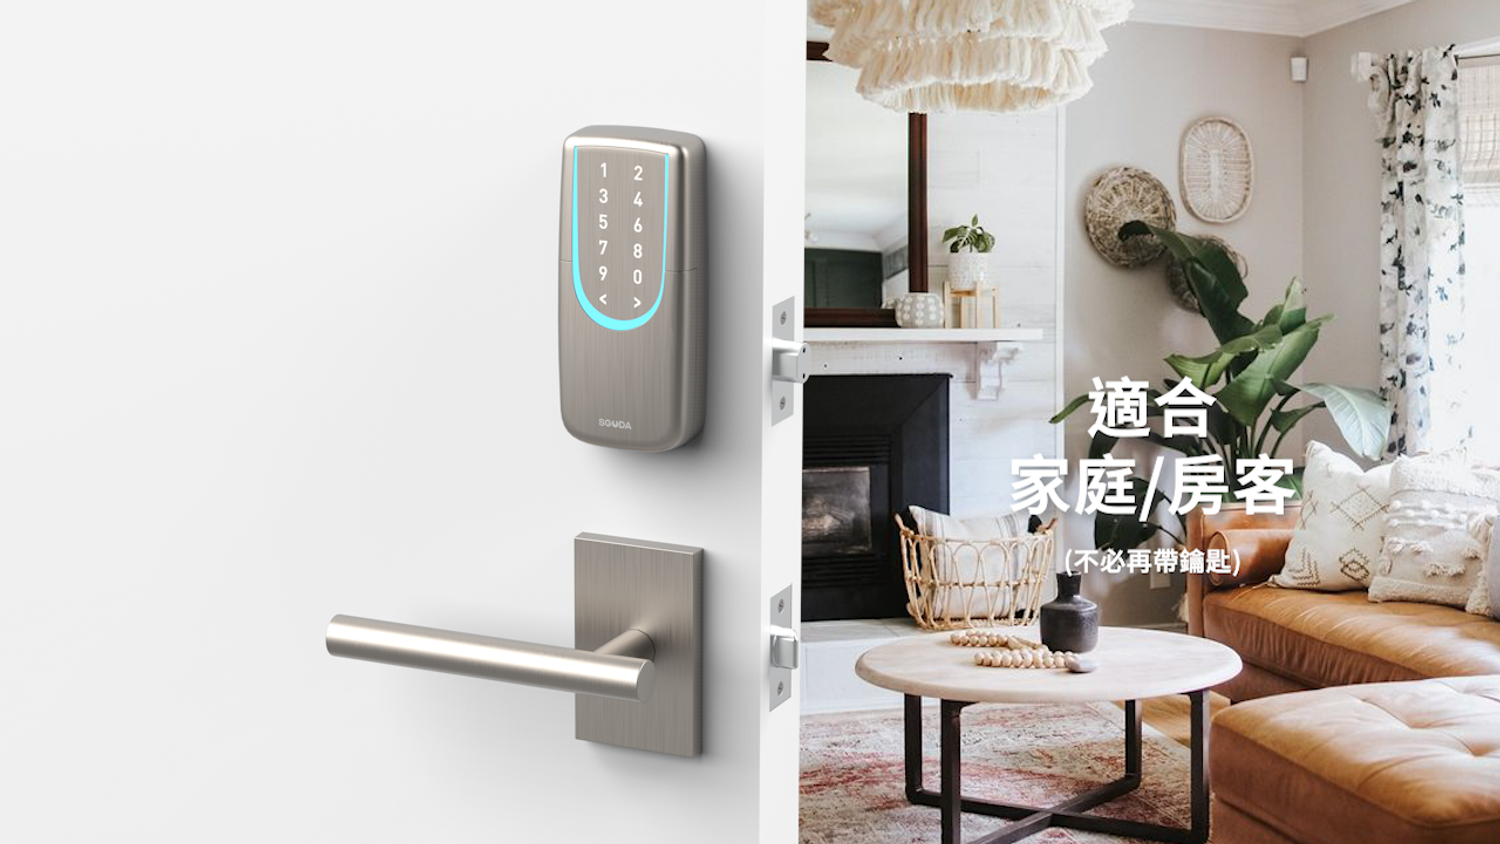 SGUDA 台灣電子鎖專業品牌 | 遠端聲控電子鎖 | 遠端時效性密碼 - 8種開鎖方式